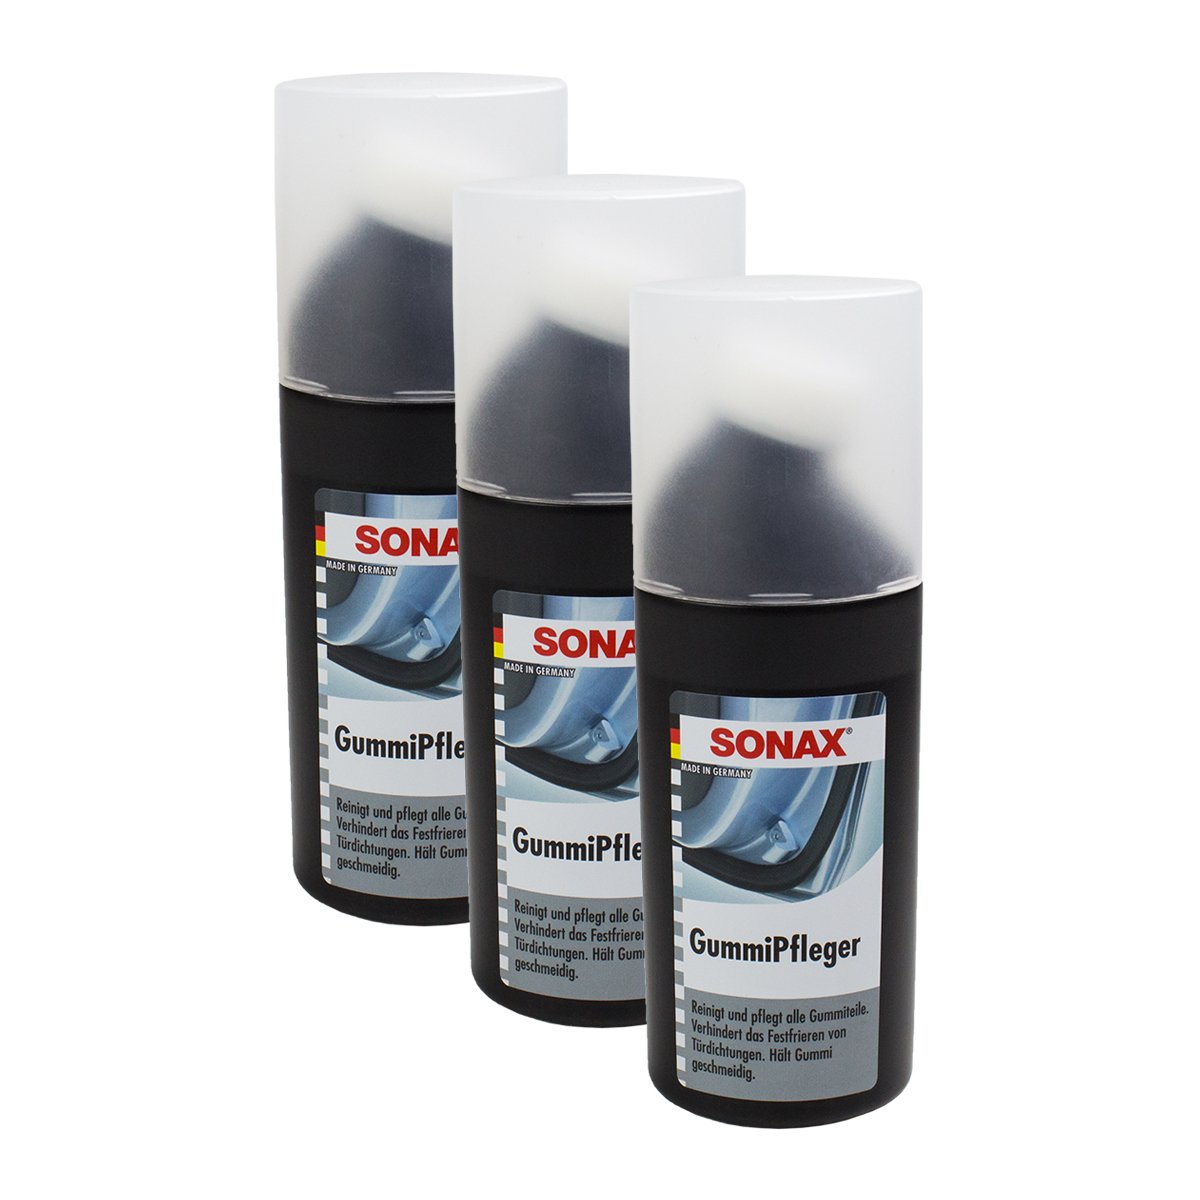 SONAX 3X 03401000 GummiPfleger Reifenpflege 100ml von SONAX